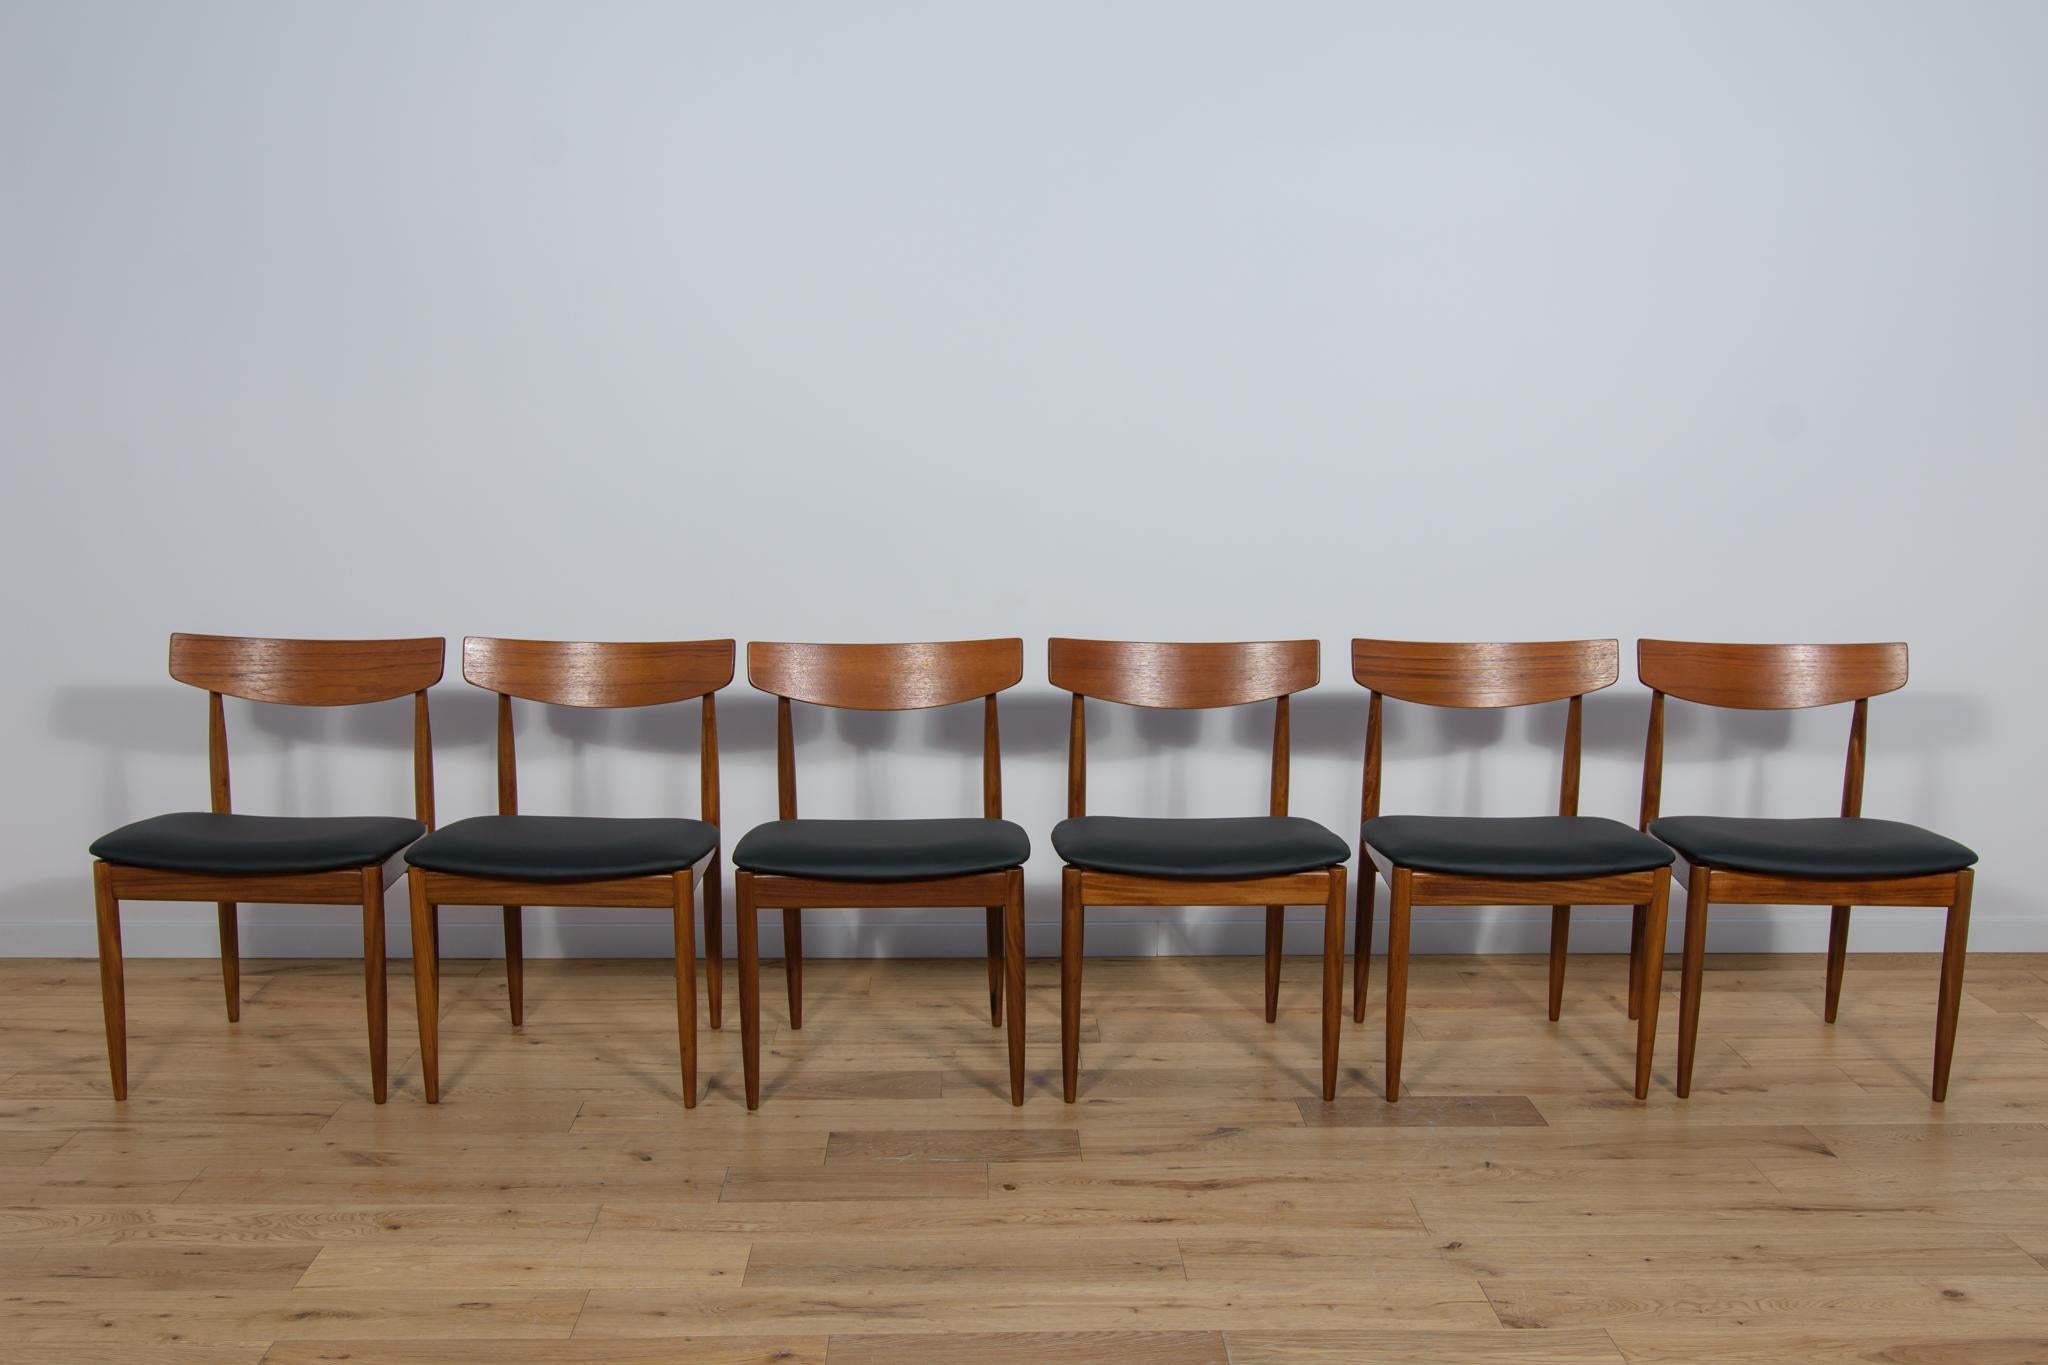 Dieser Satz von sechs Esszimmerstühlen wurde von G-Plan im Vereinigten Königreich um 1960 hergestellt. Es wurde von I. Kofod-Larsen entworfen. Die Stühle sind aus Teakholz gefertigt und haben ergonomisch geformte Rückenlehnen. Die Rahmen sind aus